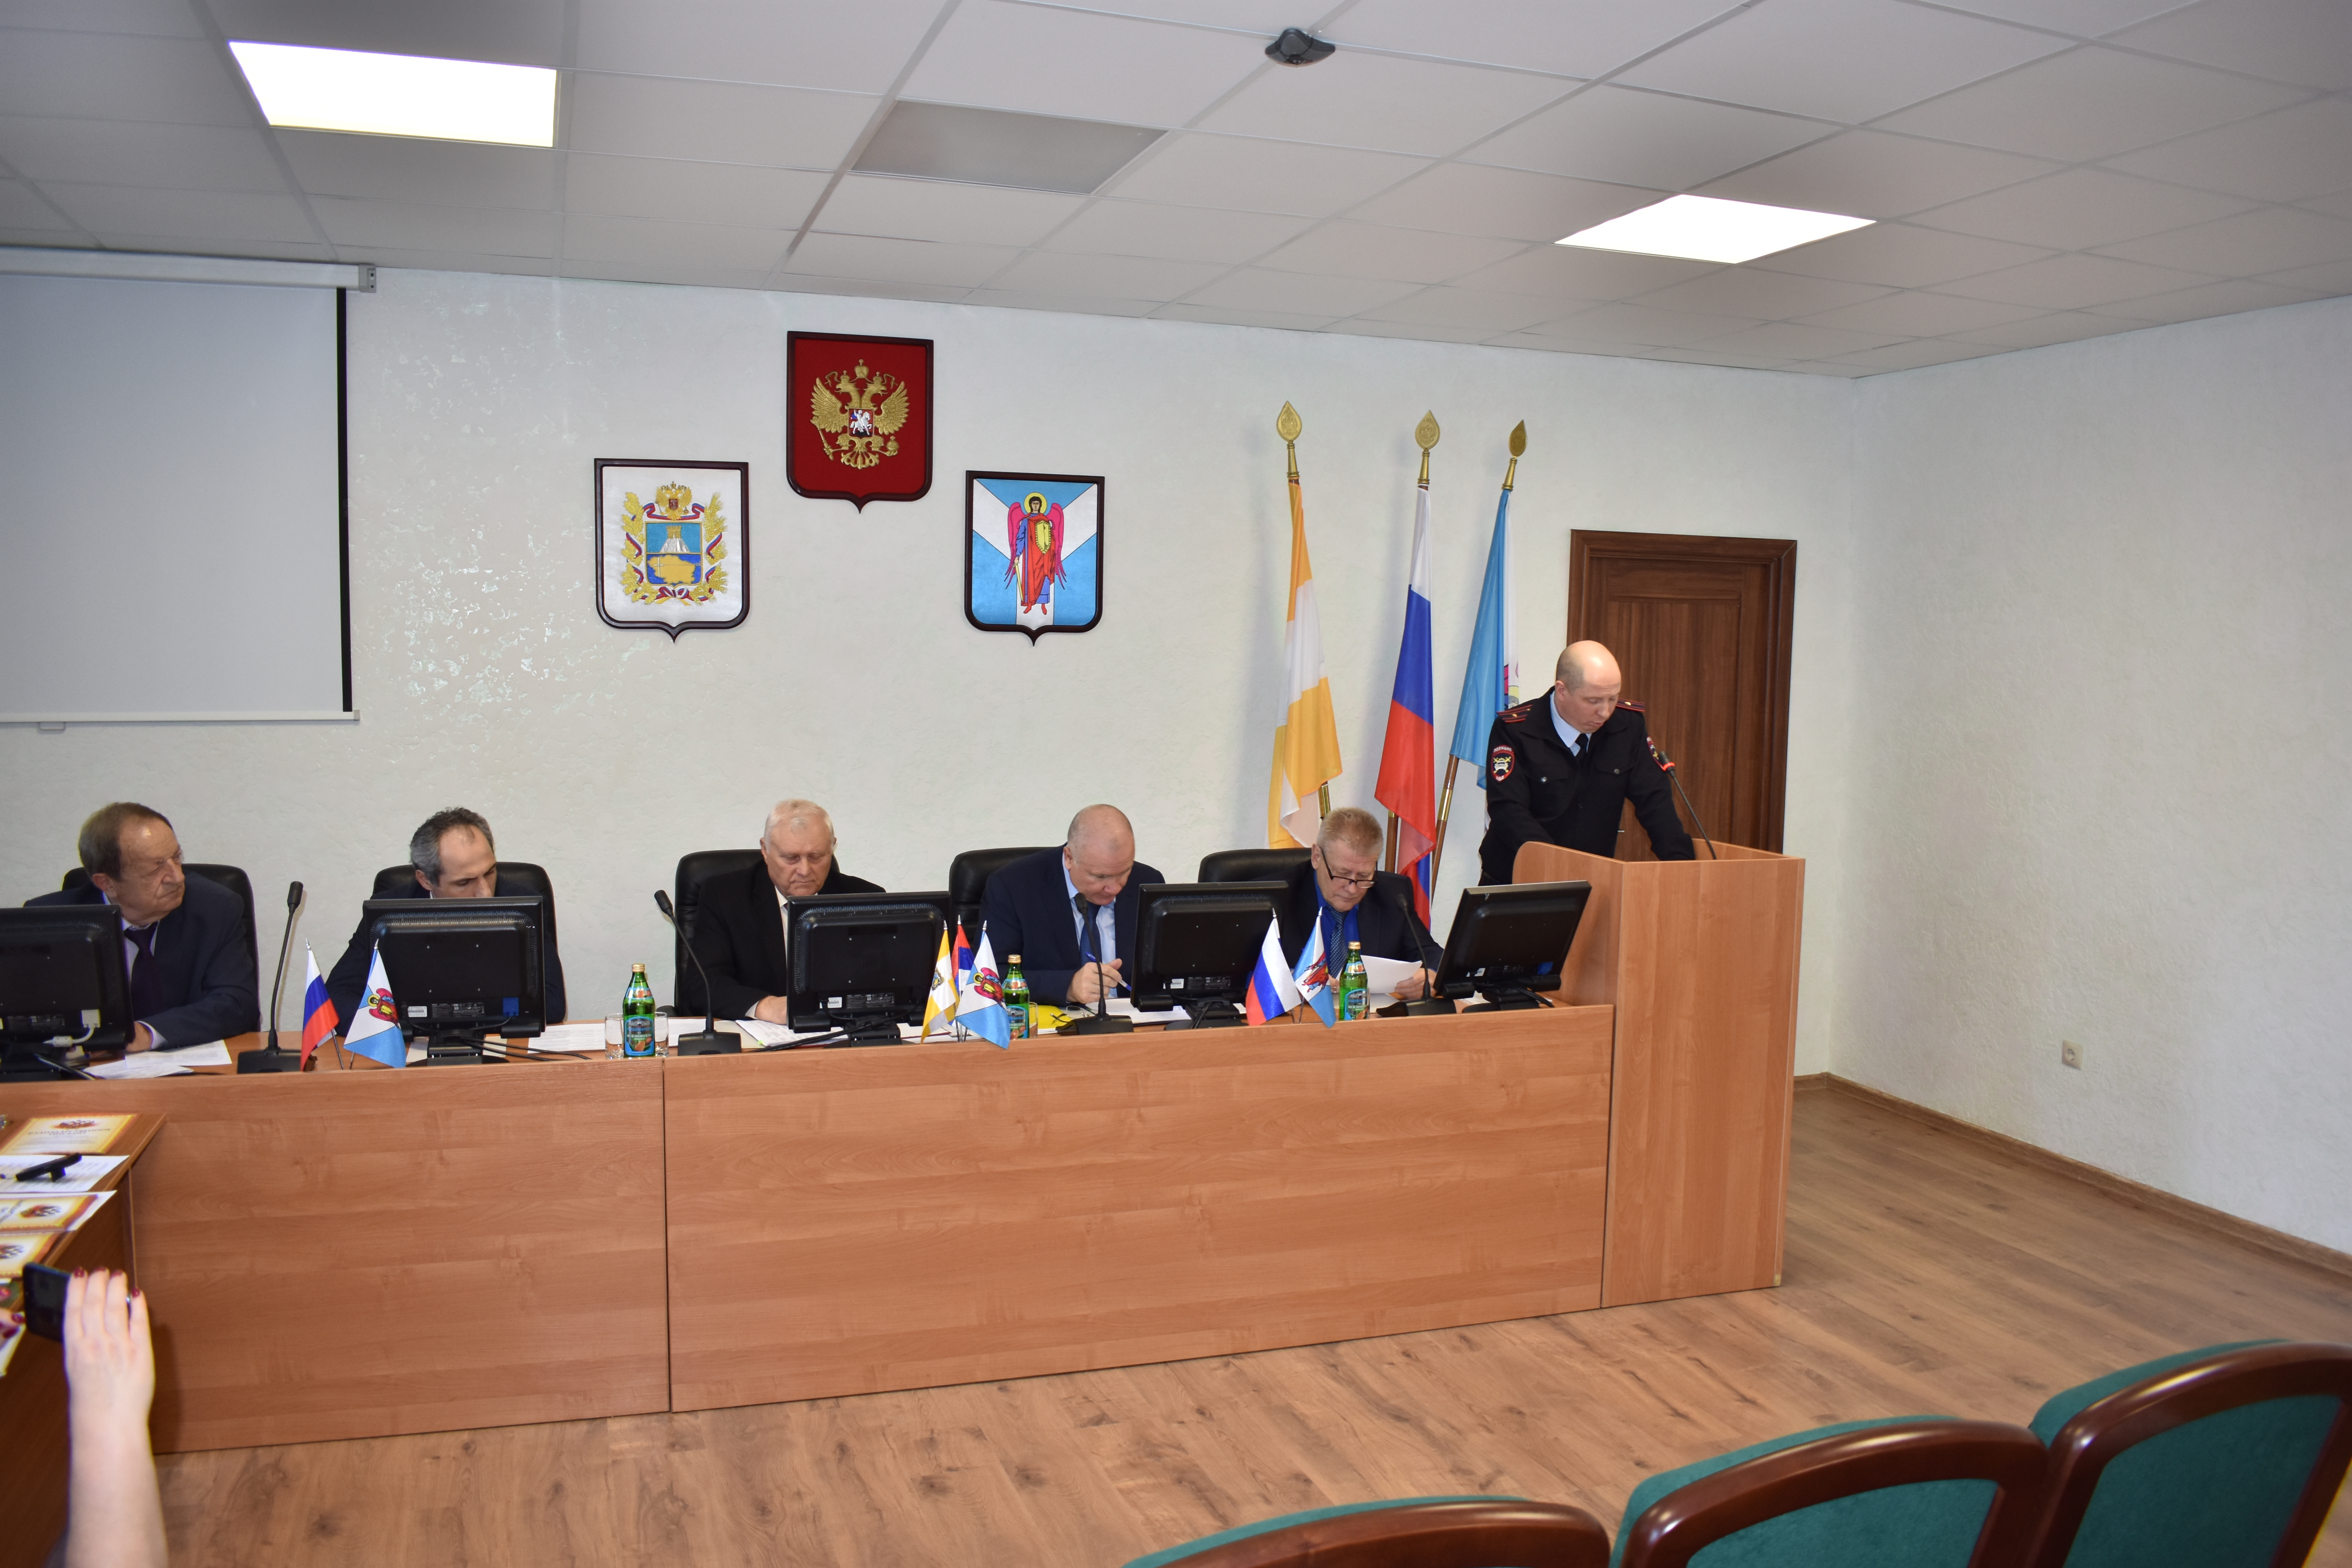 27 марта 2019 года под председательством Кулинцева В.В. состоялось тринадцатое заседание Общественного Совета Шпаковского муниципального района Ставропольского края второго созыва